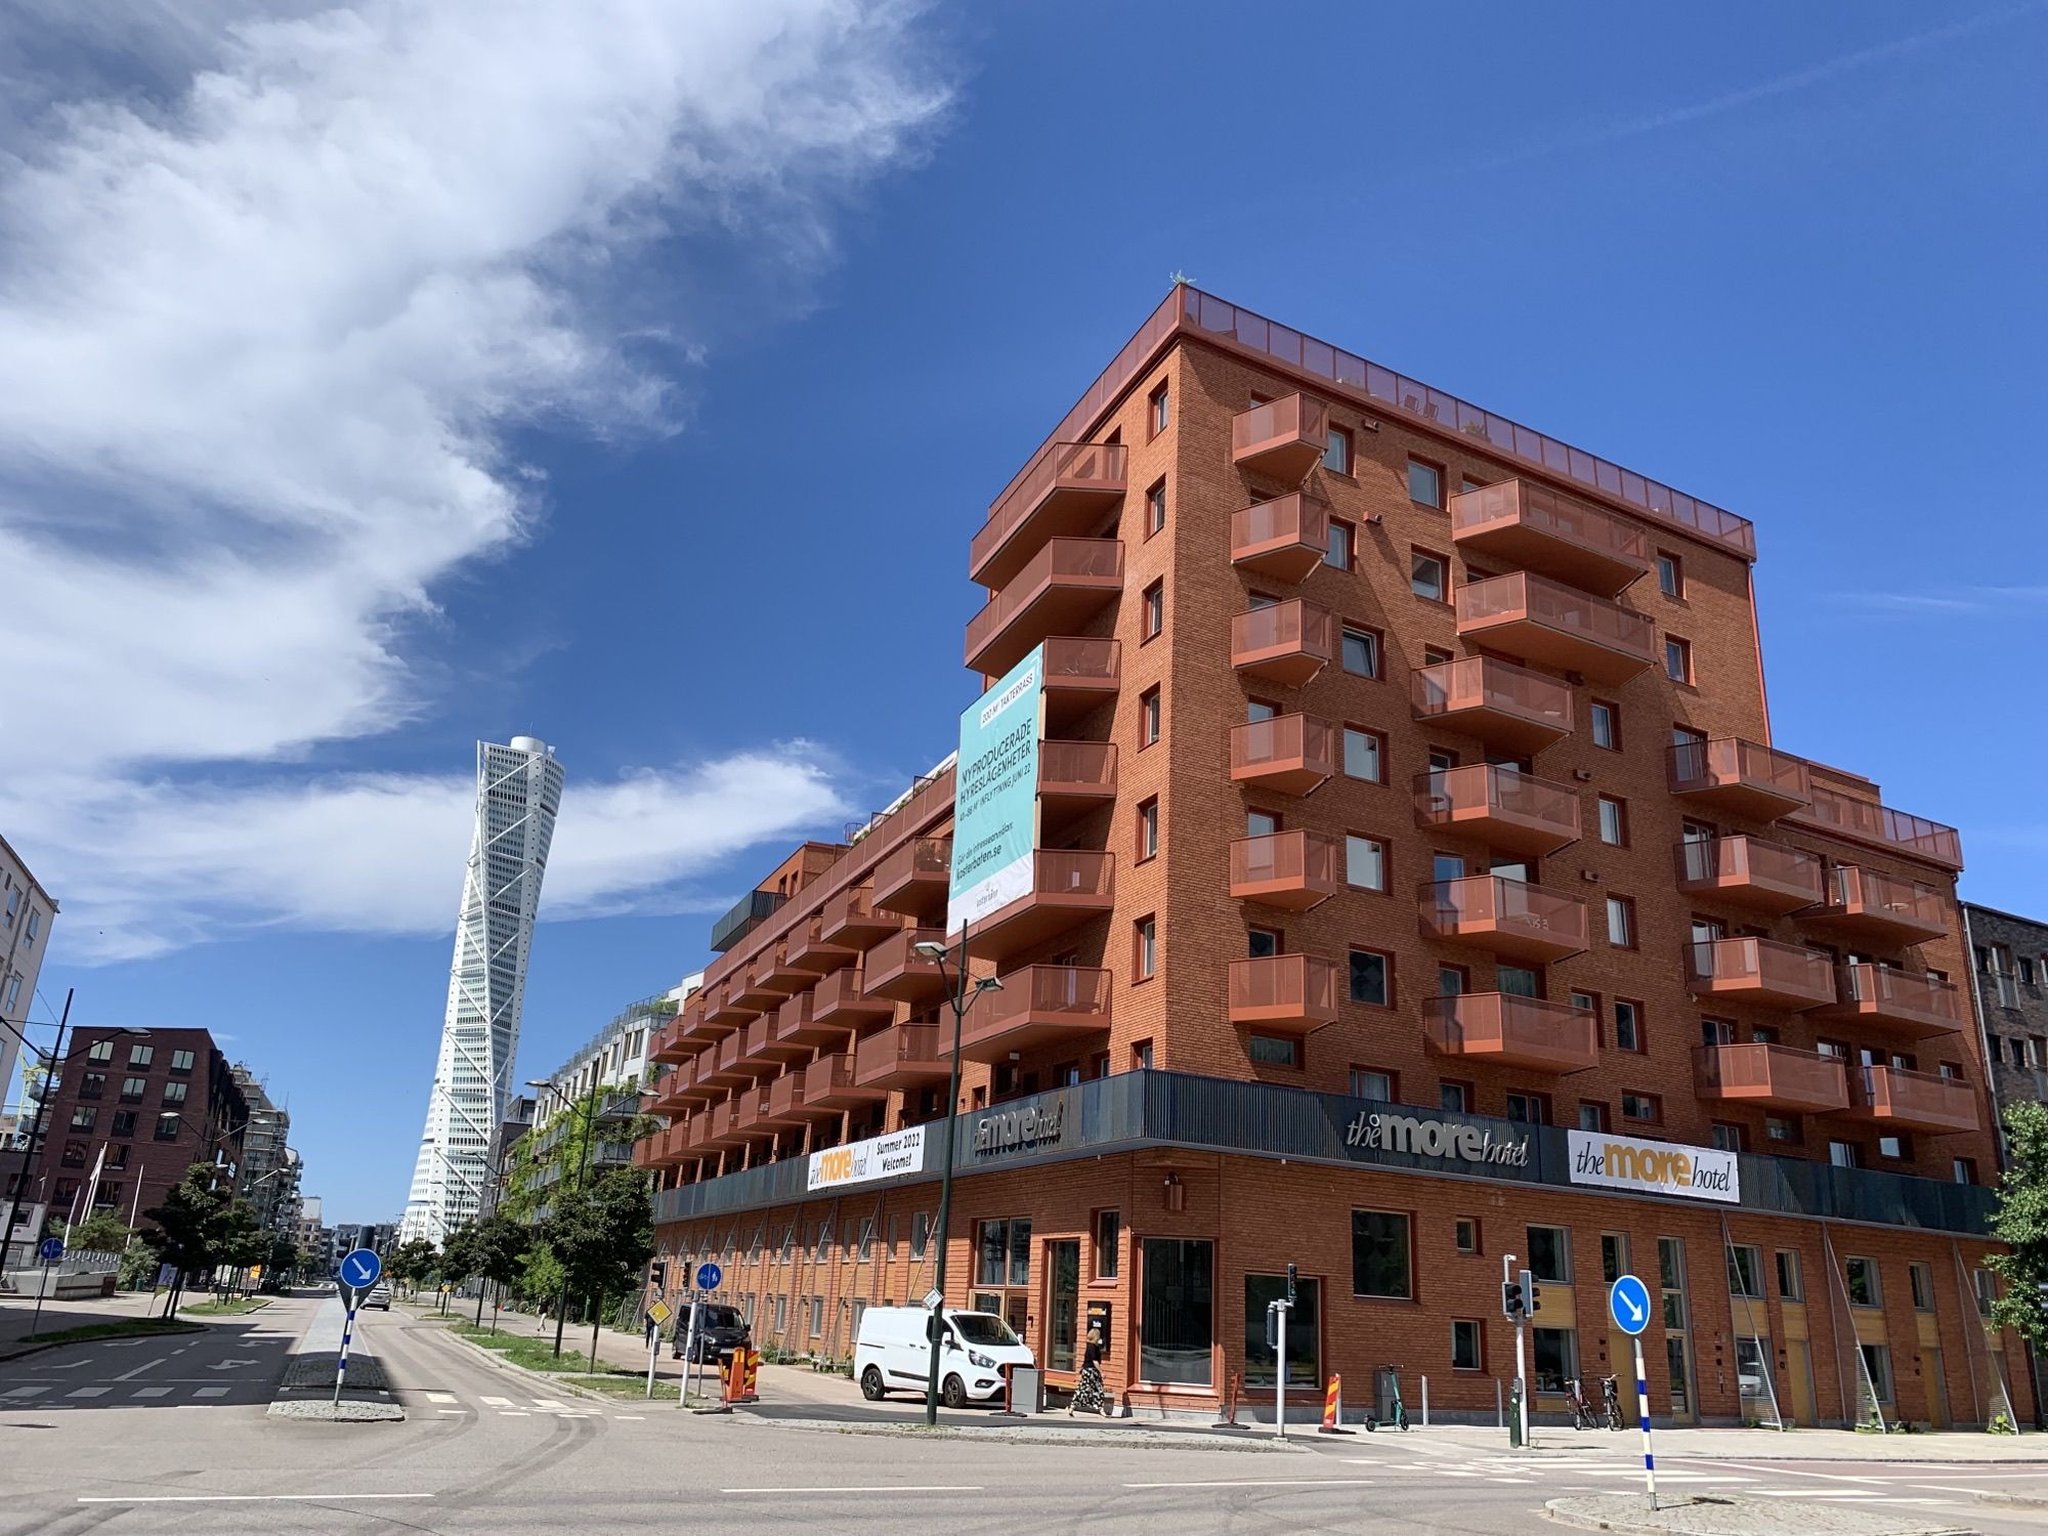 The More Hotel Västra Hamnen image